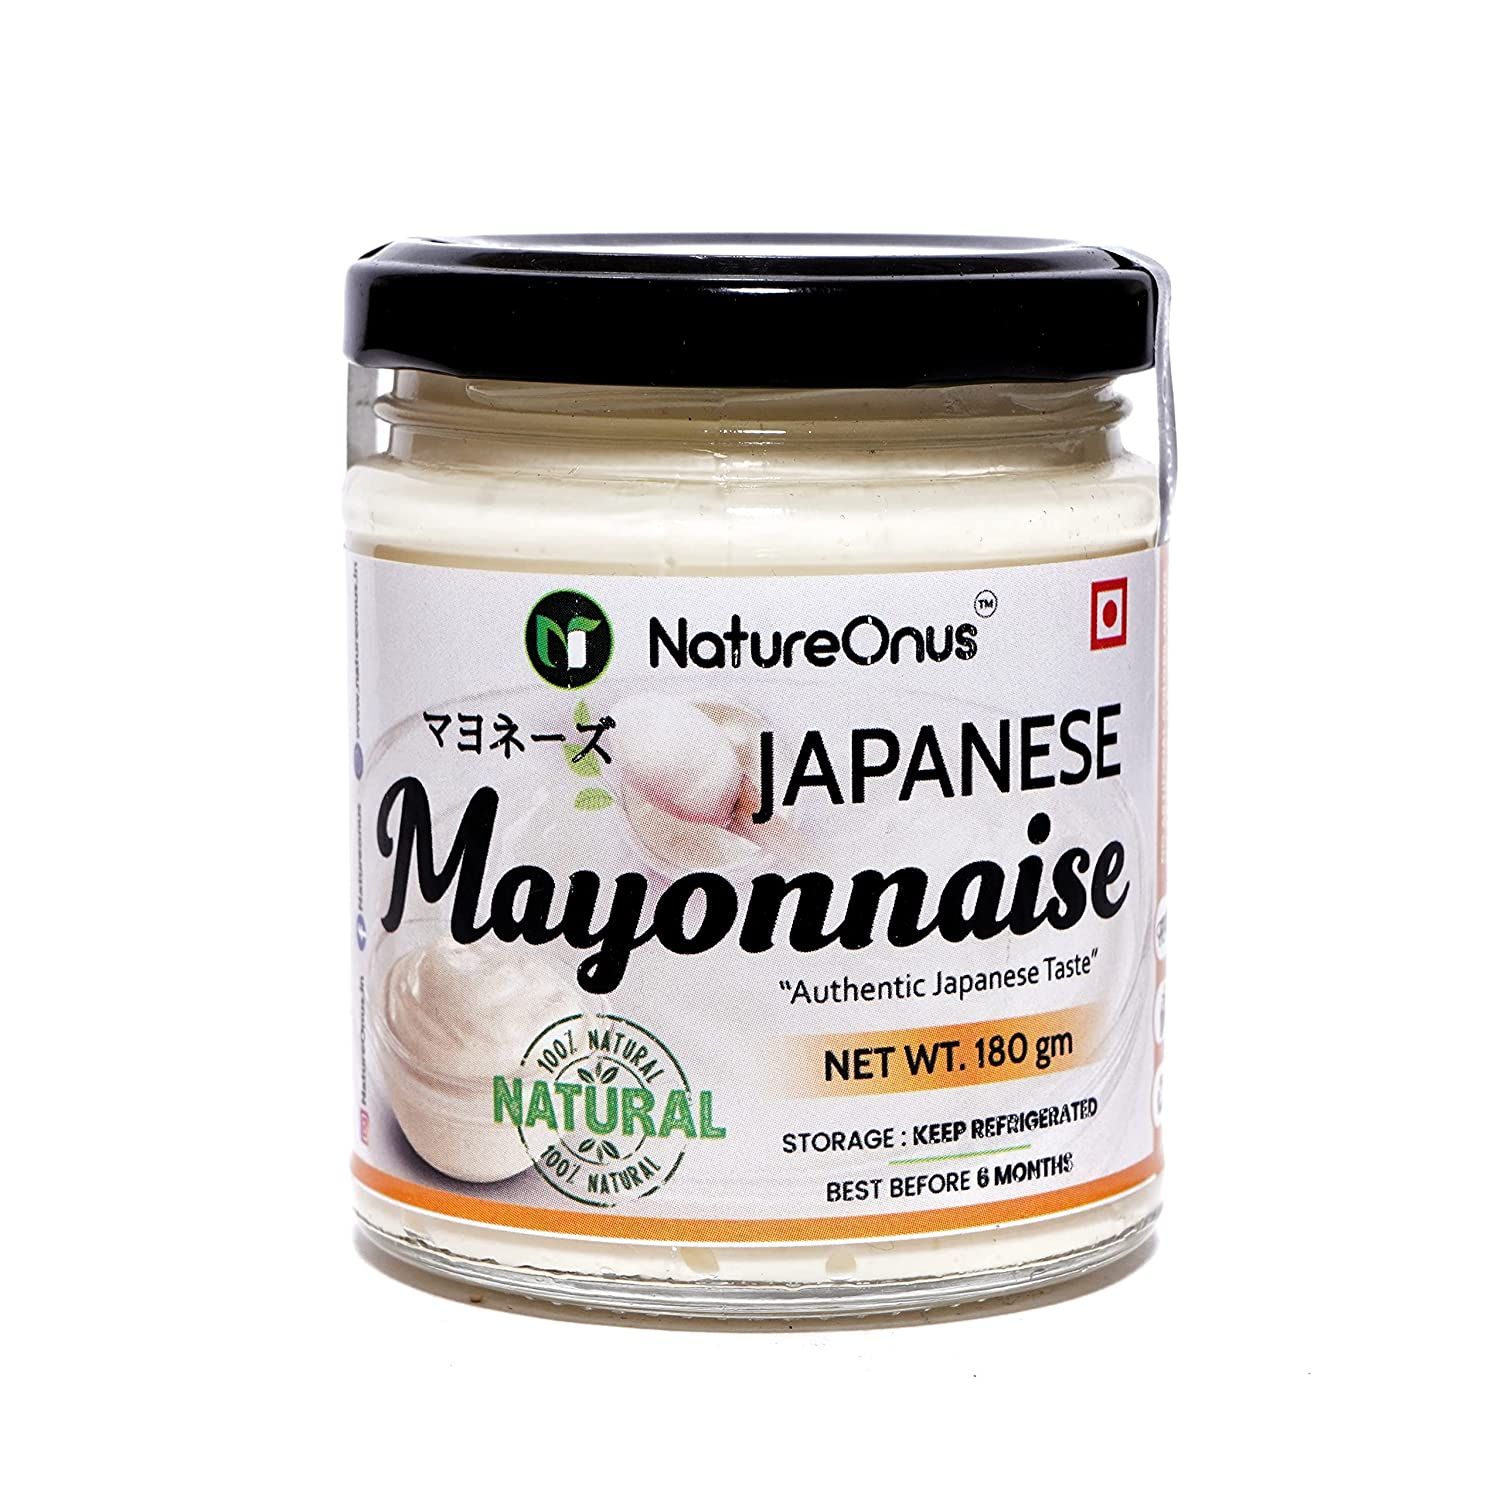 NatureOnus Japanese Mayonnaise Image